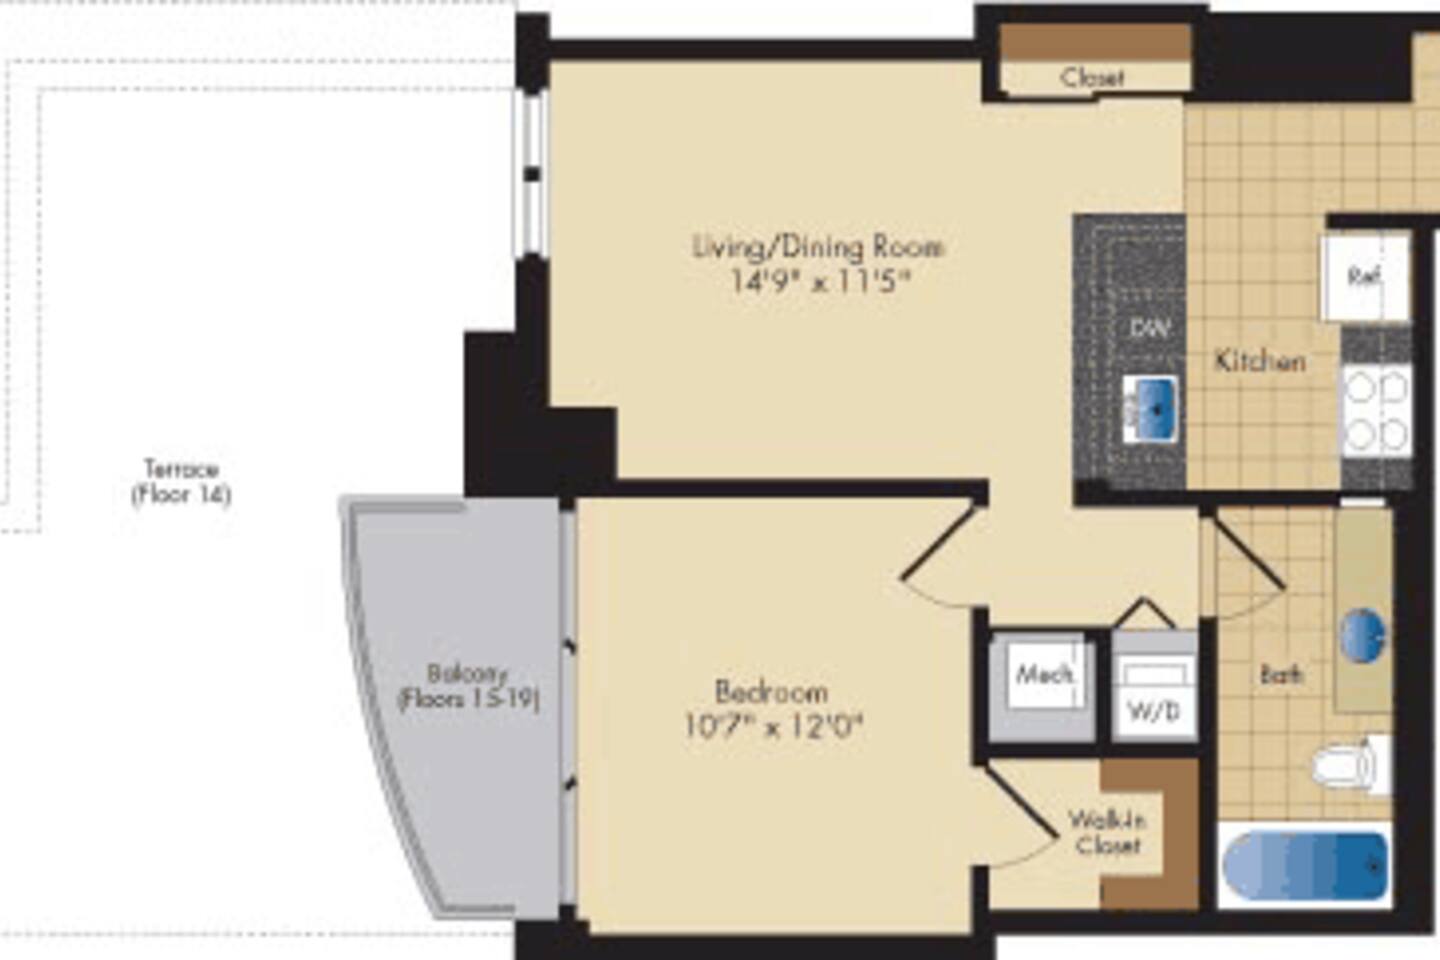 Floorplan diagram for Wilson, showing 1 bedroom